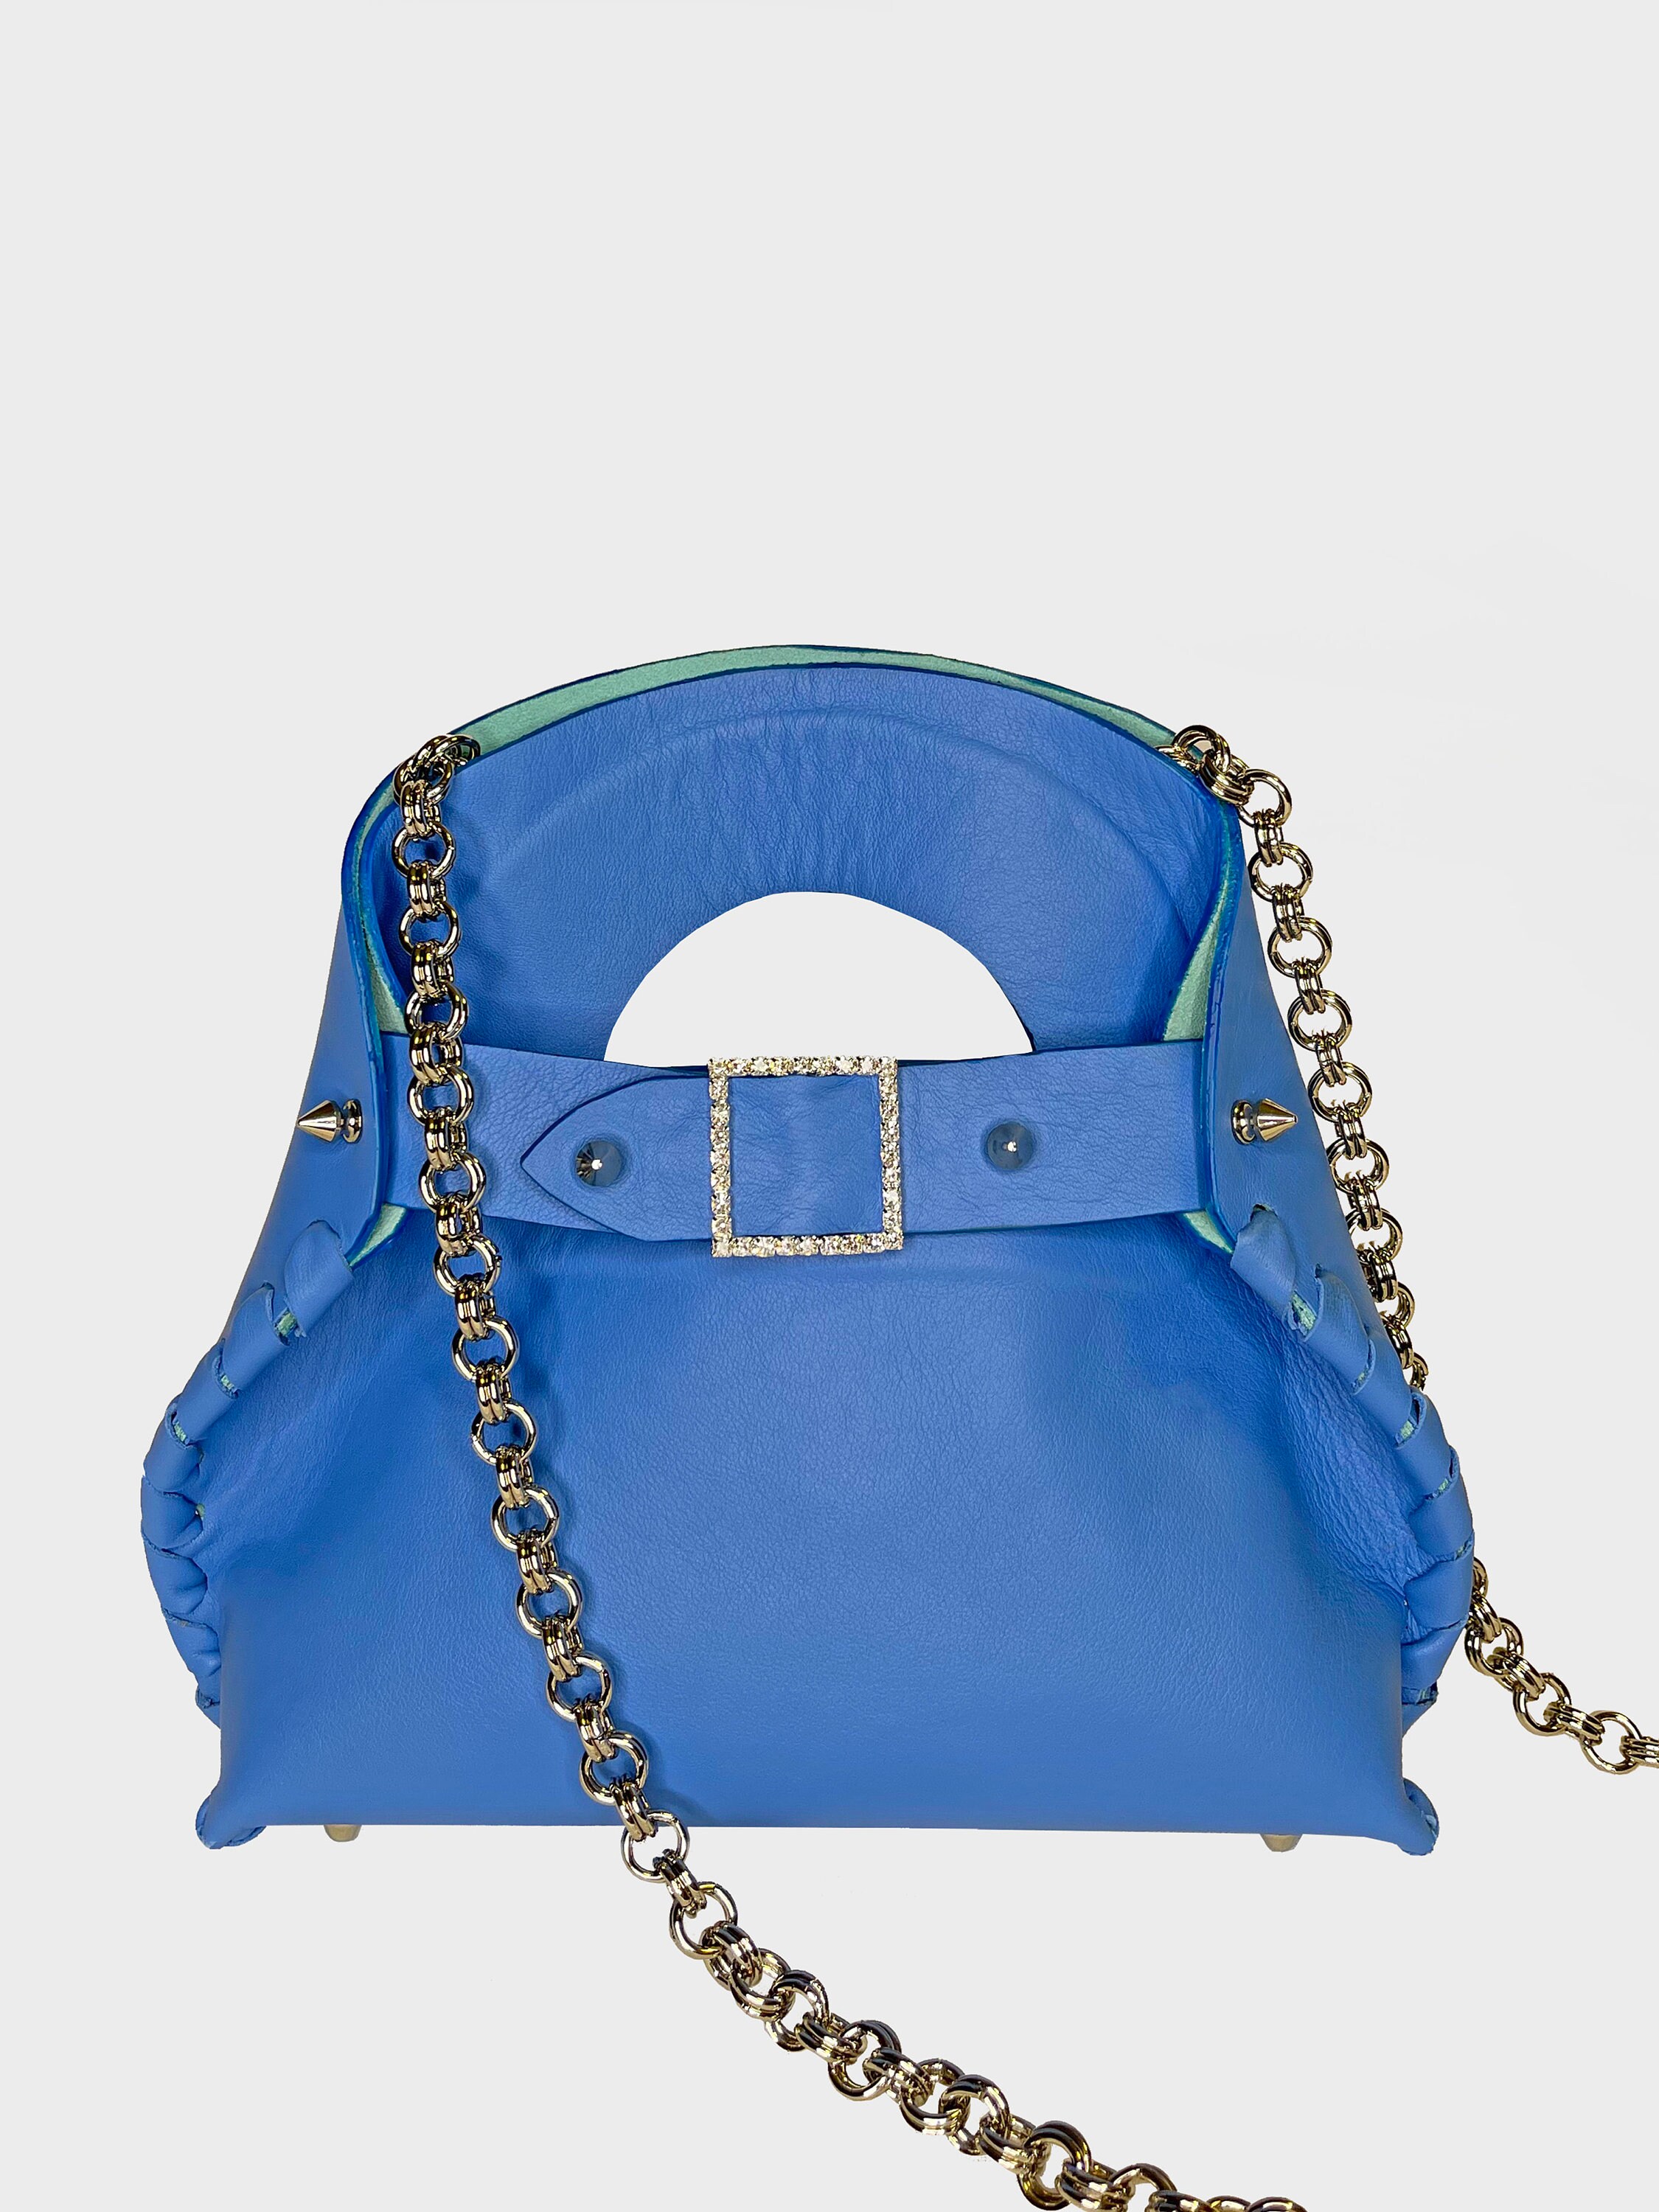 I got the Madeleine BB! : r/handbags